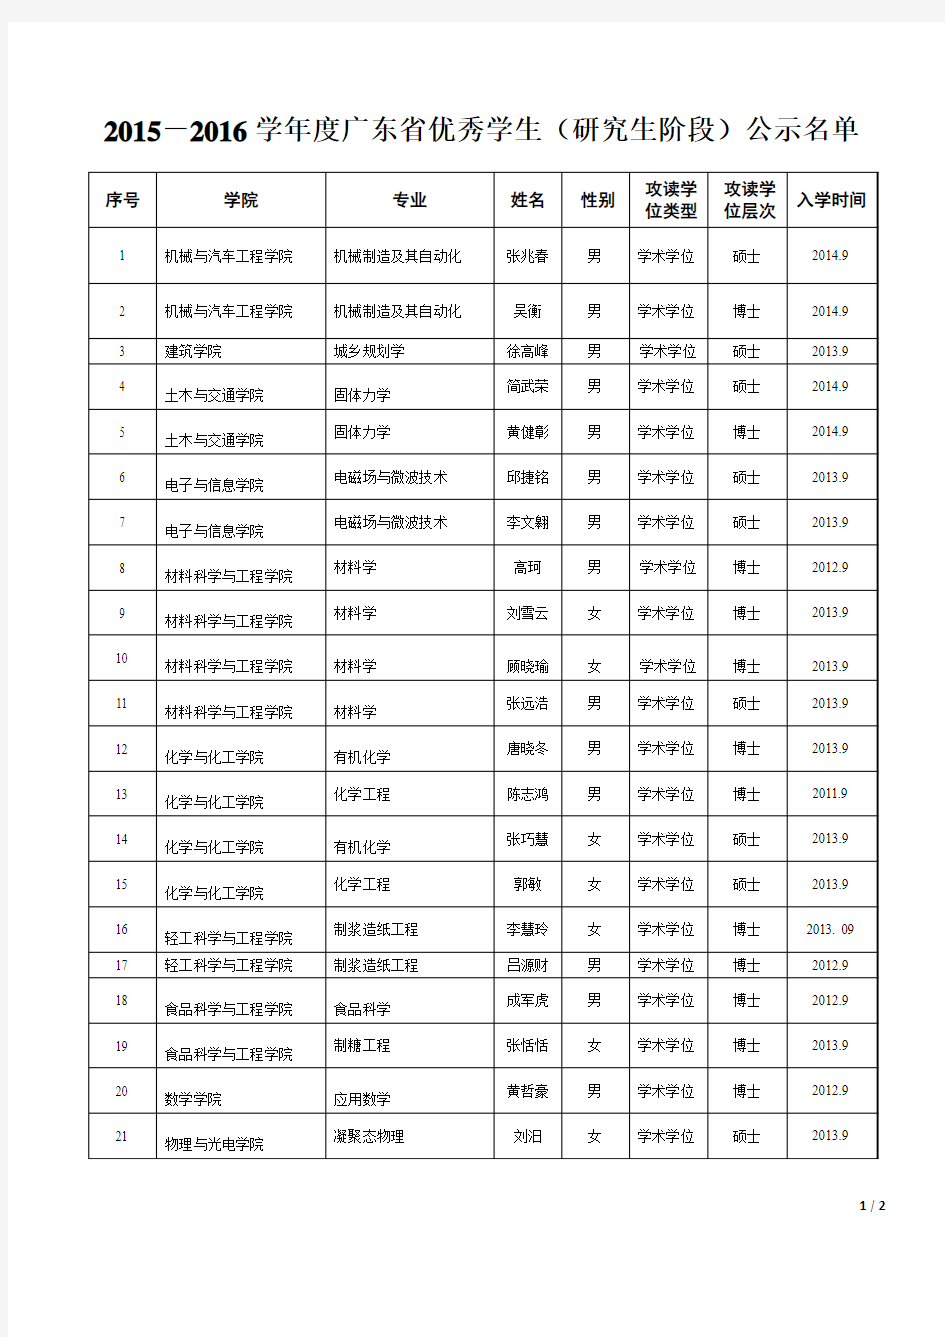 华南理工大学：2015-2016学年度广东省优秀学生(研究生阶段)公示名单